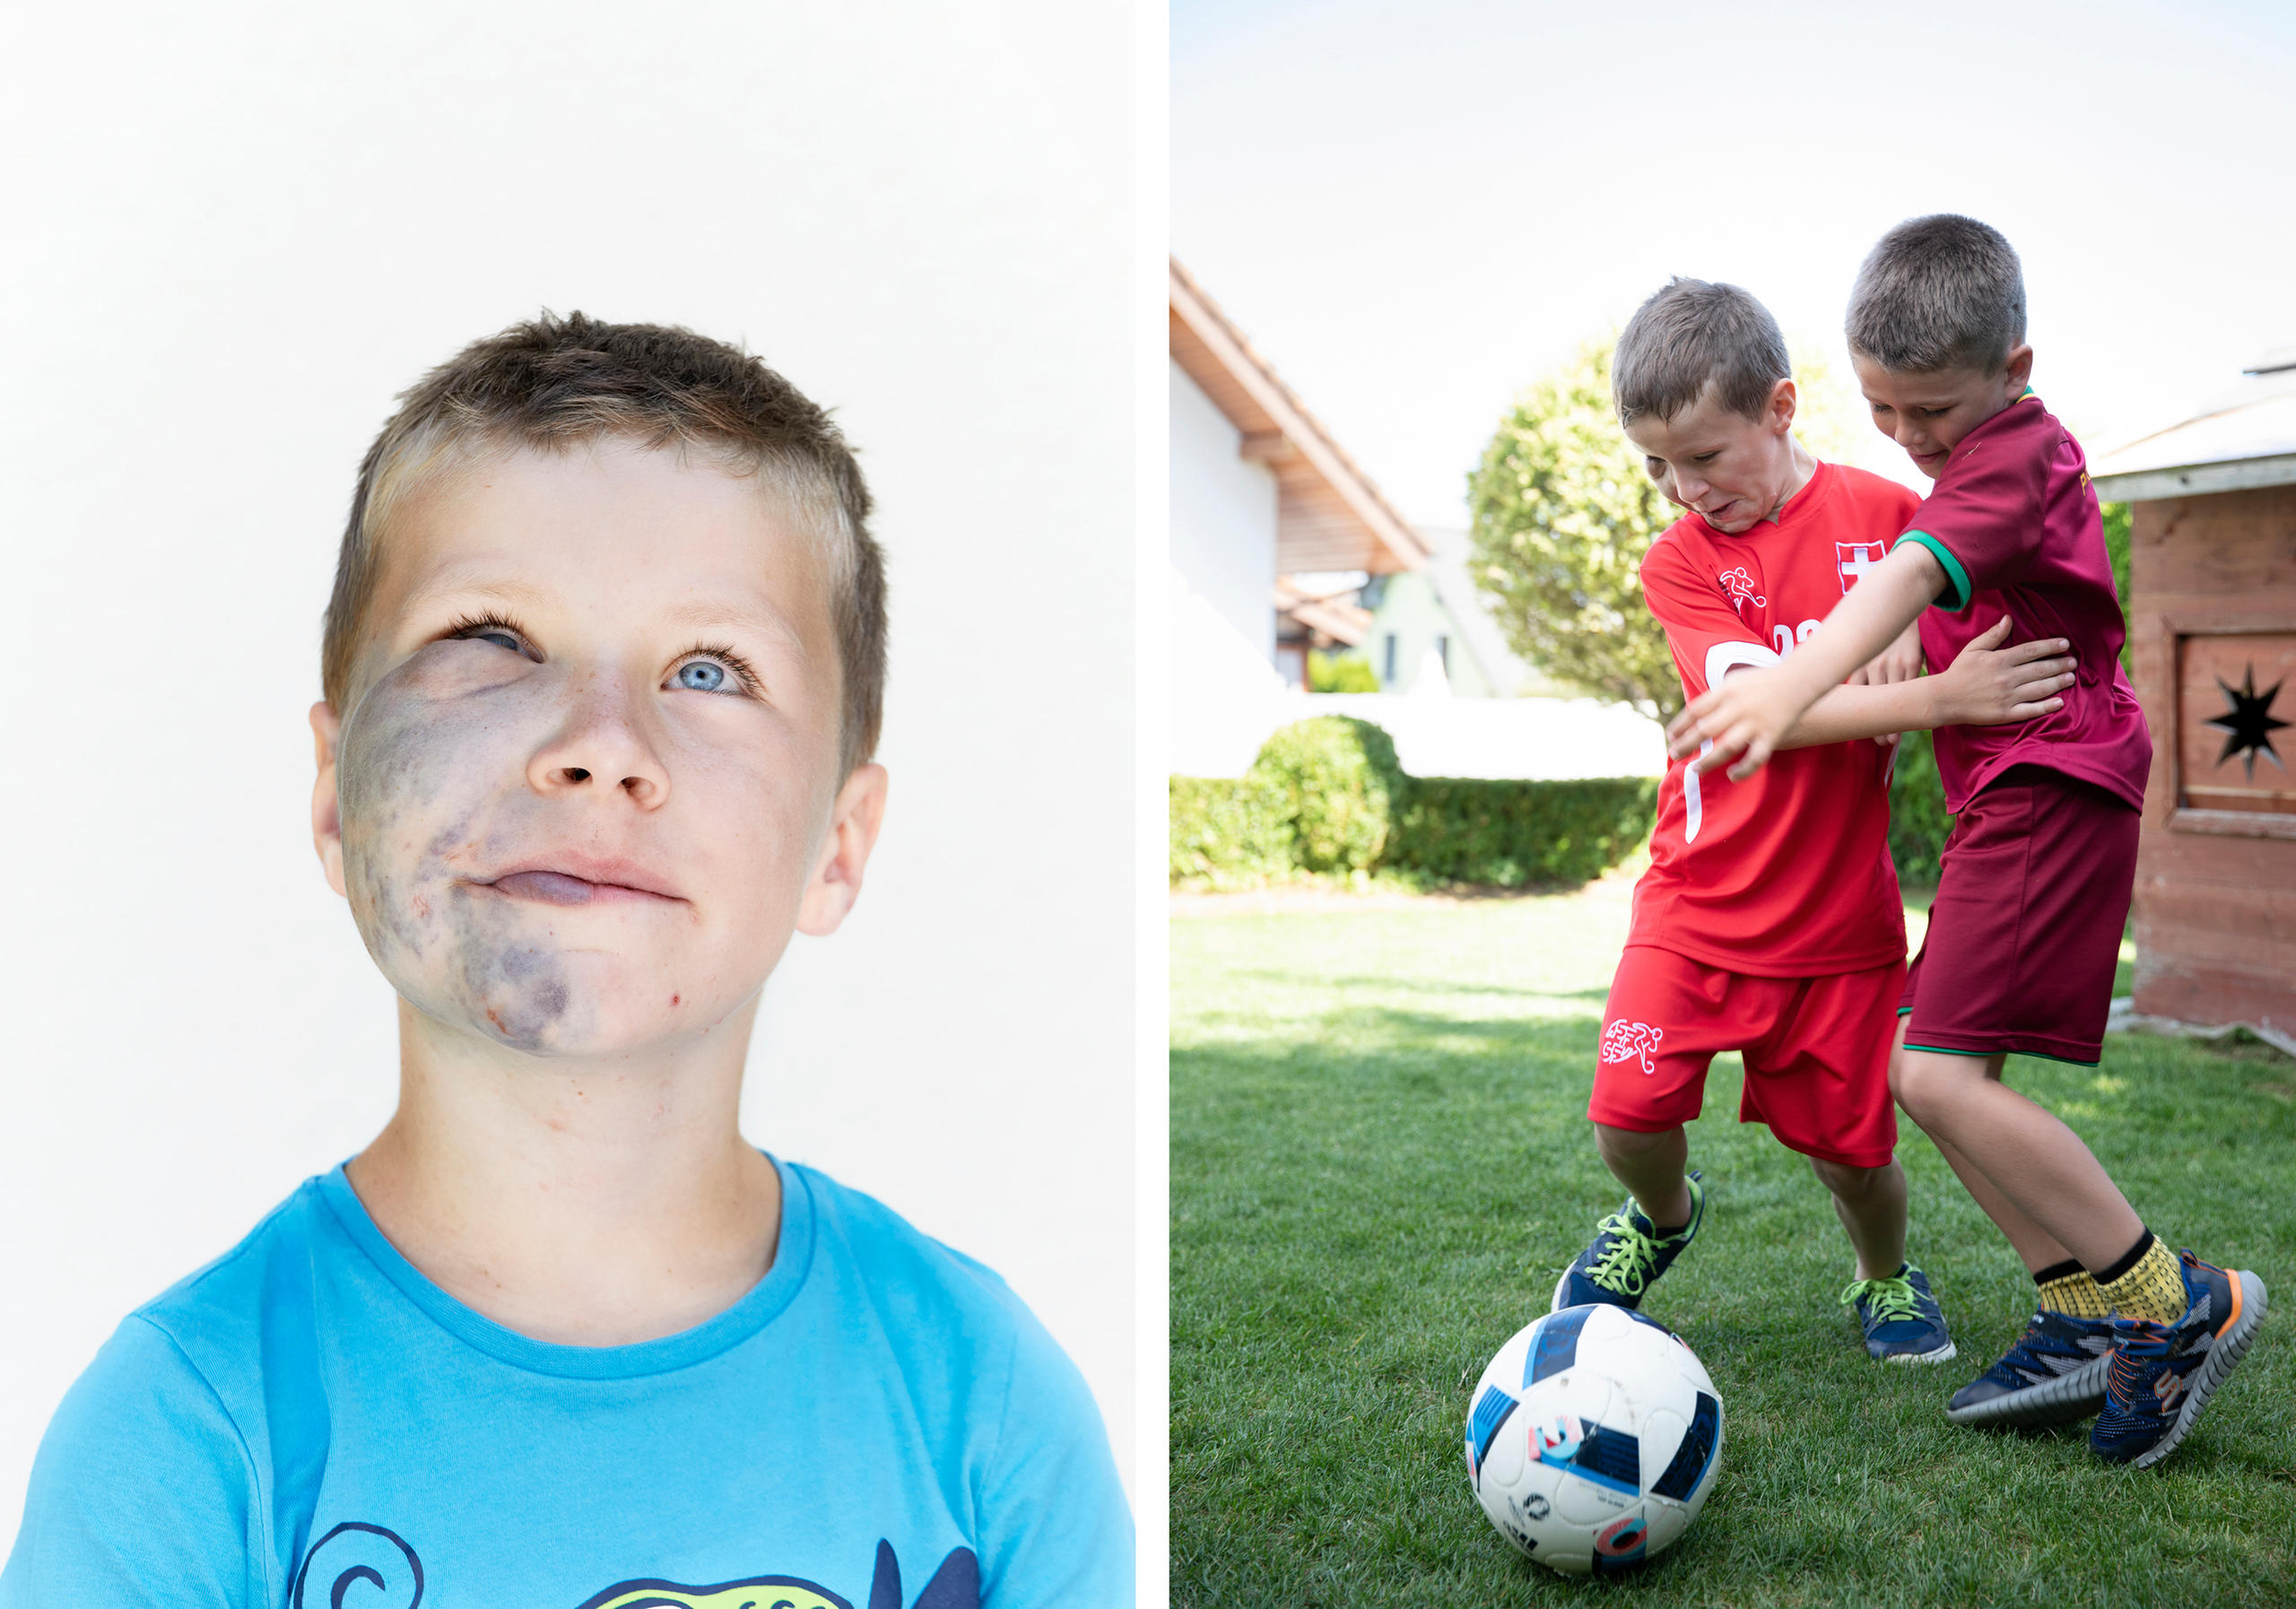 Dos fotos: en una, ni´no con lesiones en el rostro, en la otra, ese niño jugando futbol con otro niño